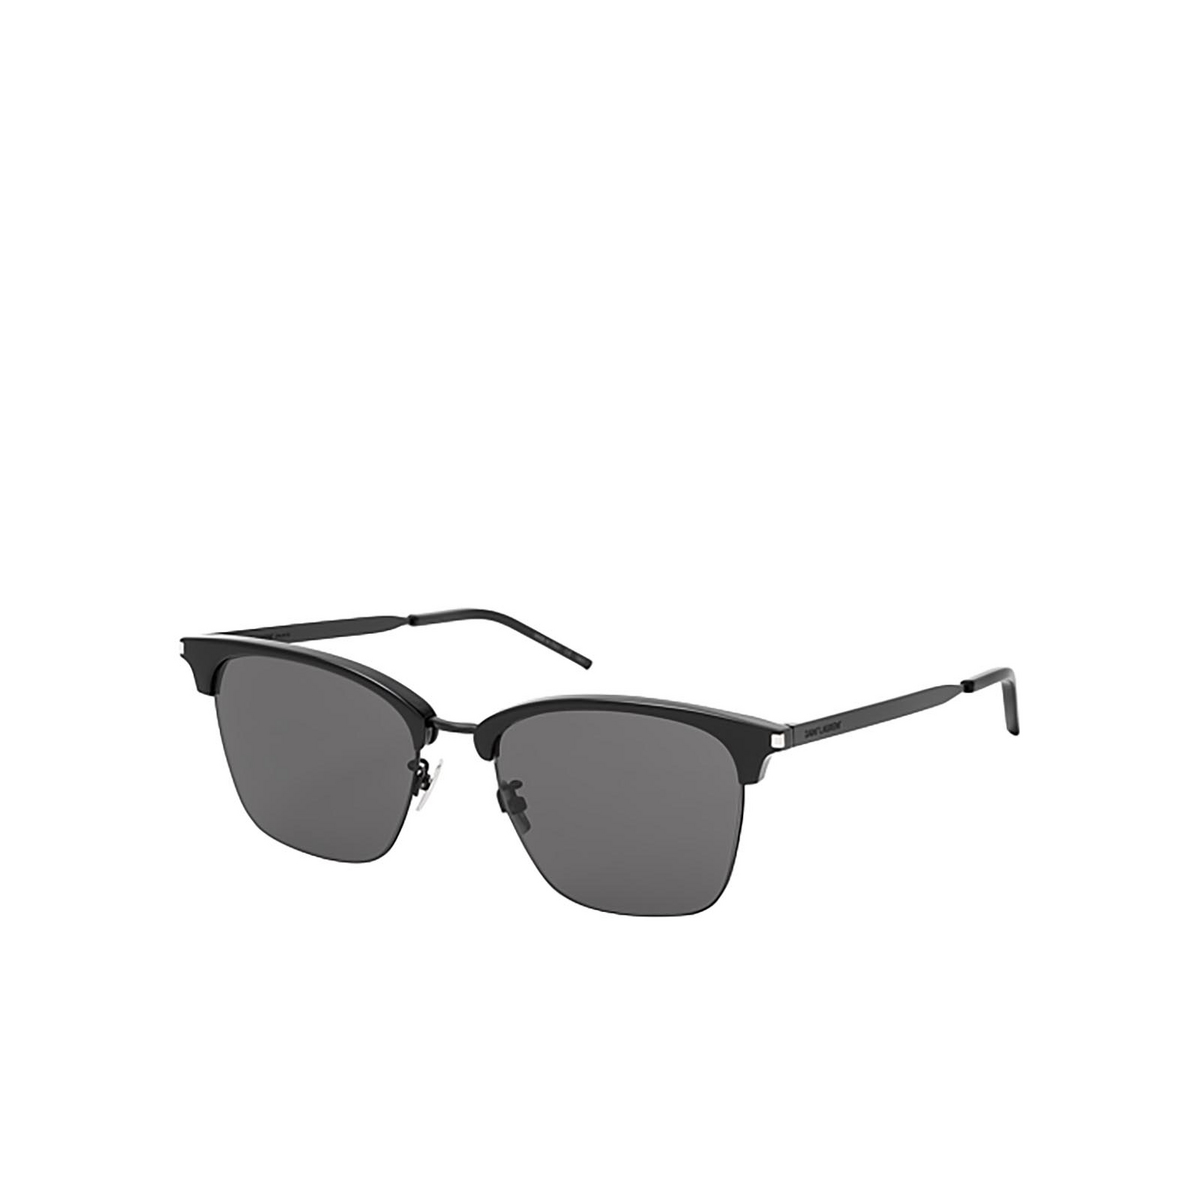 Saint Laurent® Square Sunglasses: SL 340 color Black 001 - 2/2.